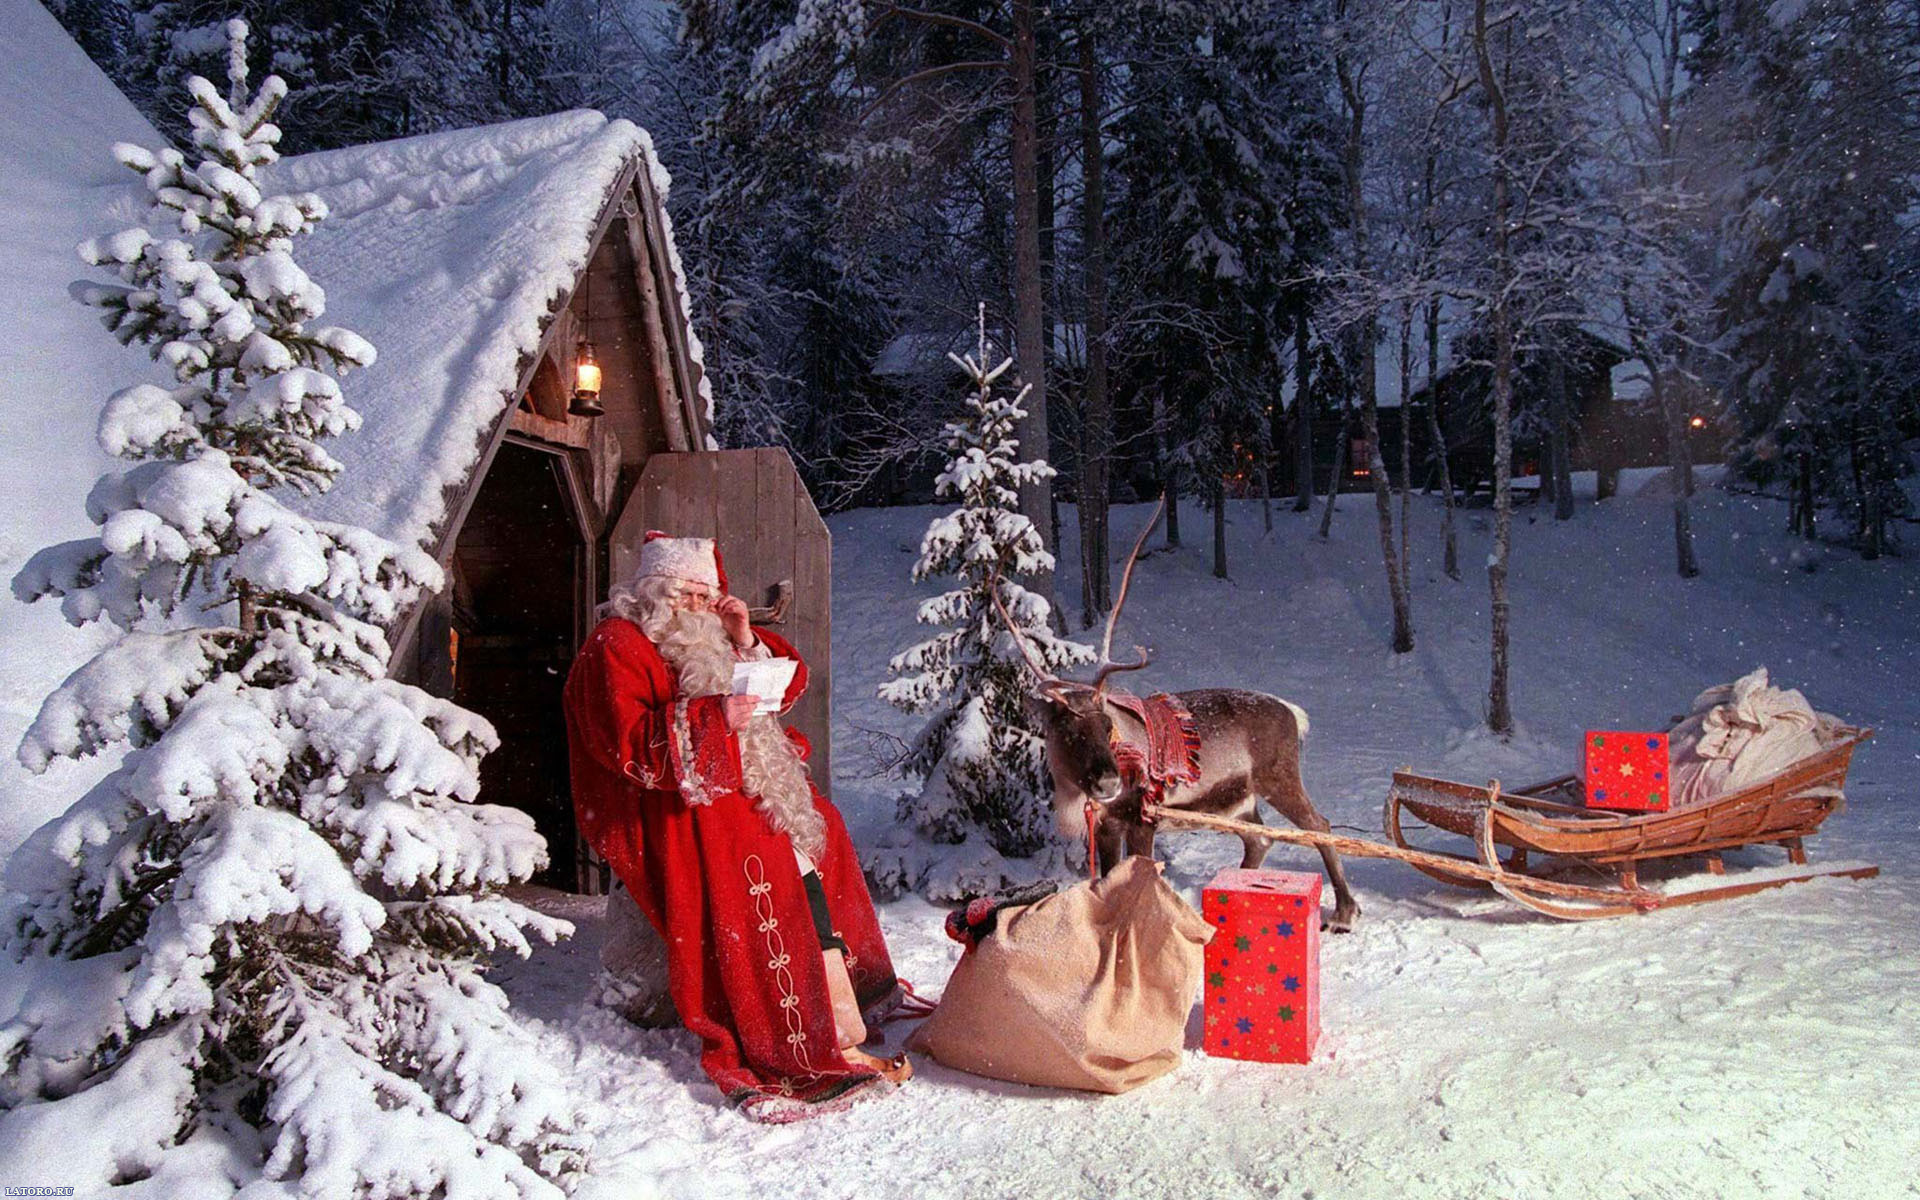 Популярные заставки и фоны Рождество (Christmas Xmas) на компьютер